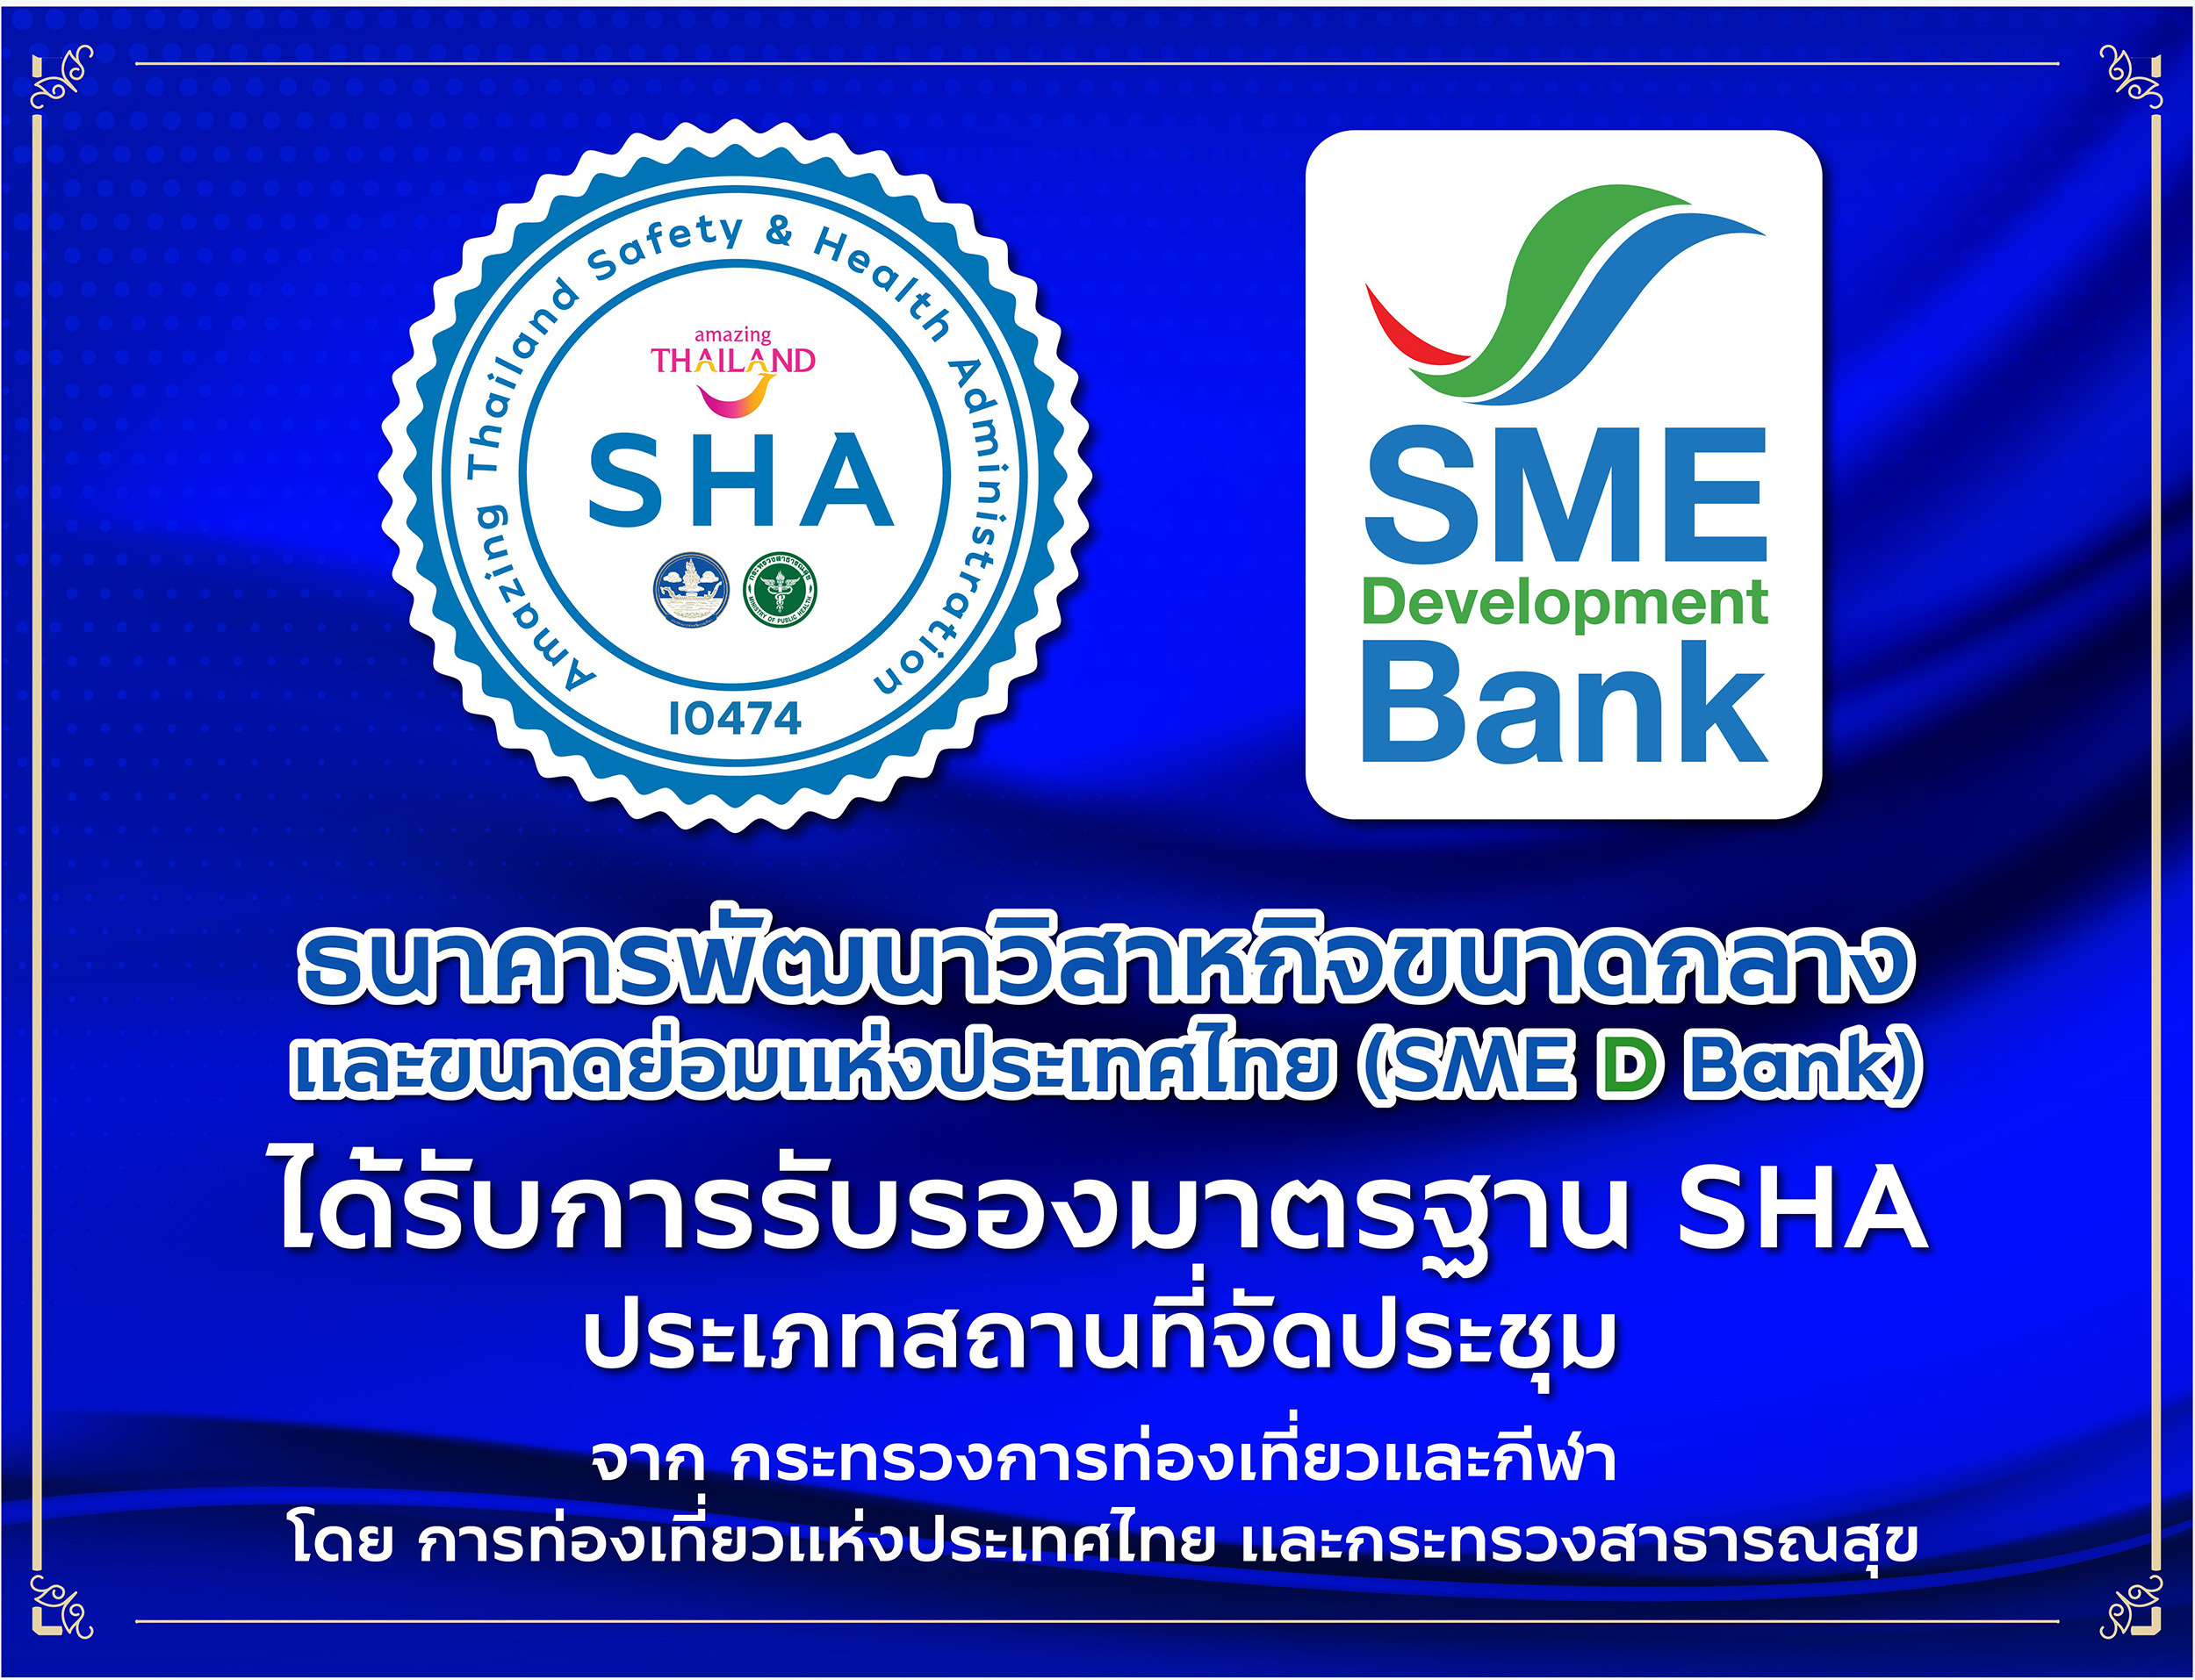 SME D Bank ได้รับมาตรฐาน “SHA” จากกระทรวงการท่องเที่ยวและกีฬา